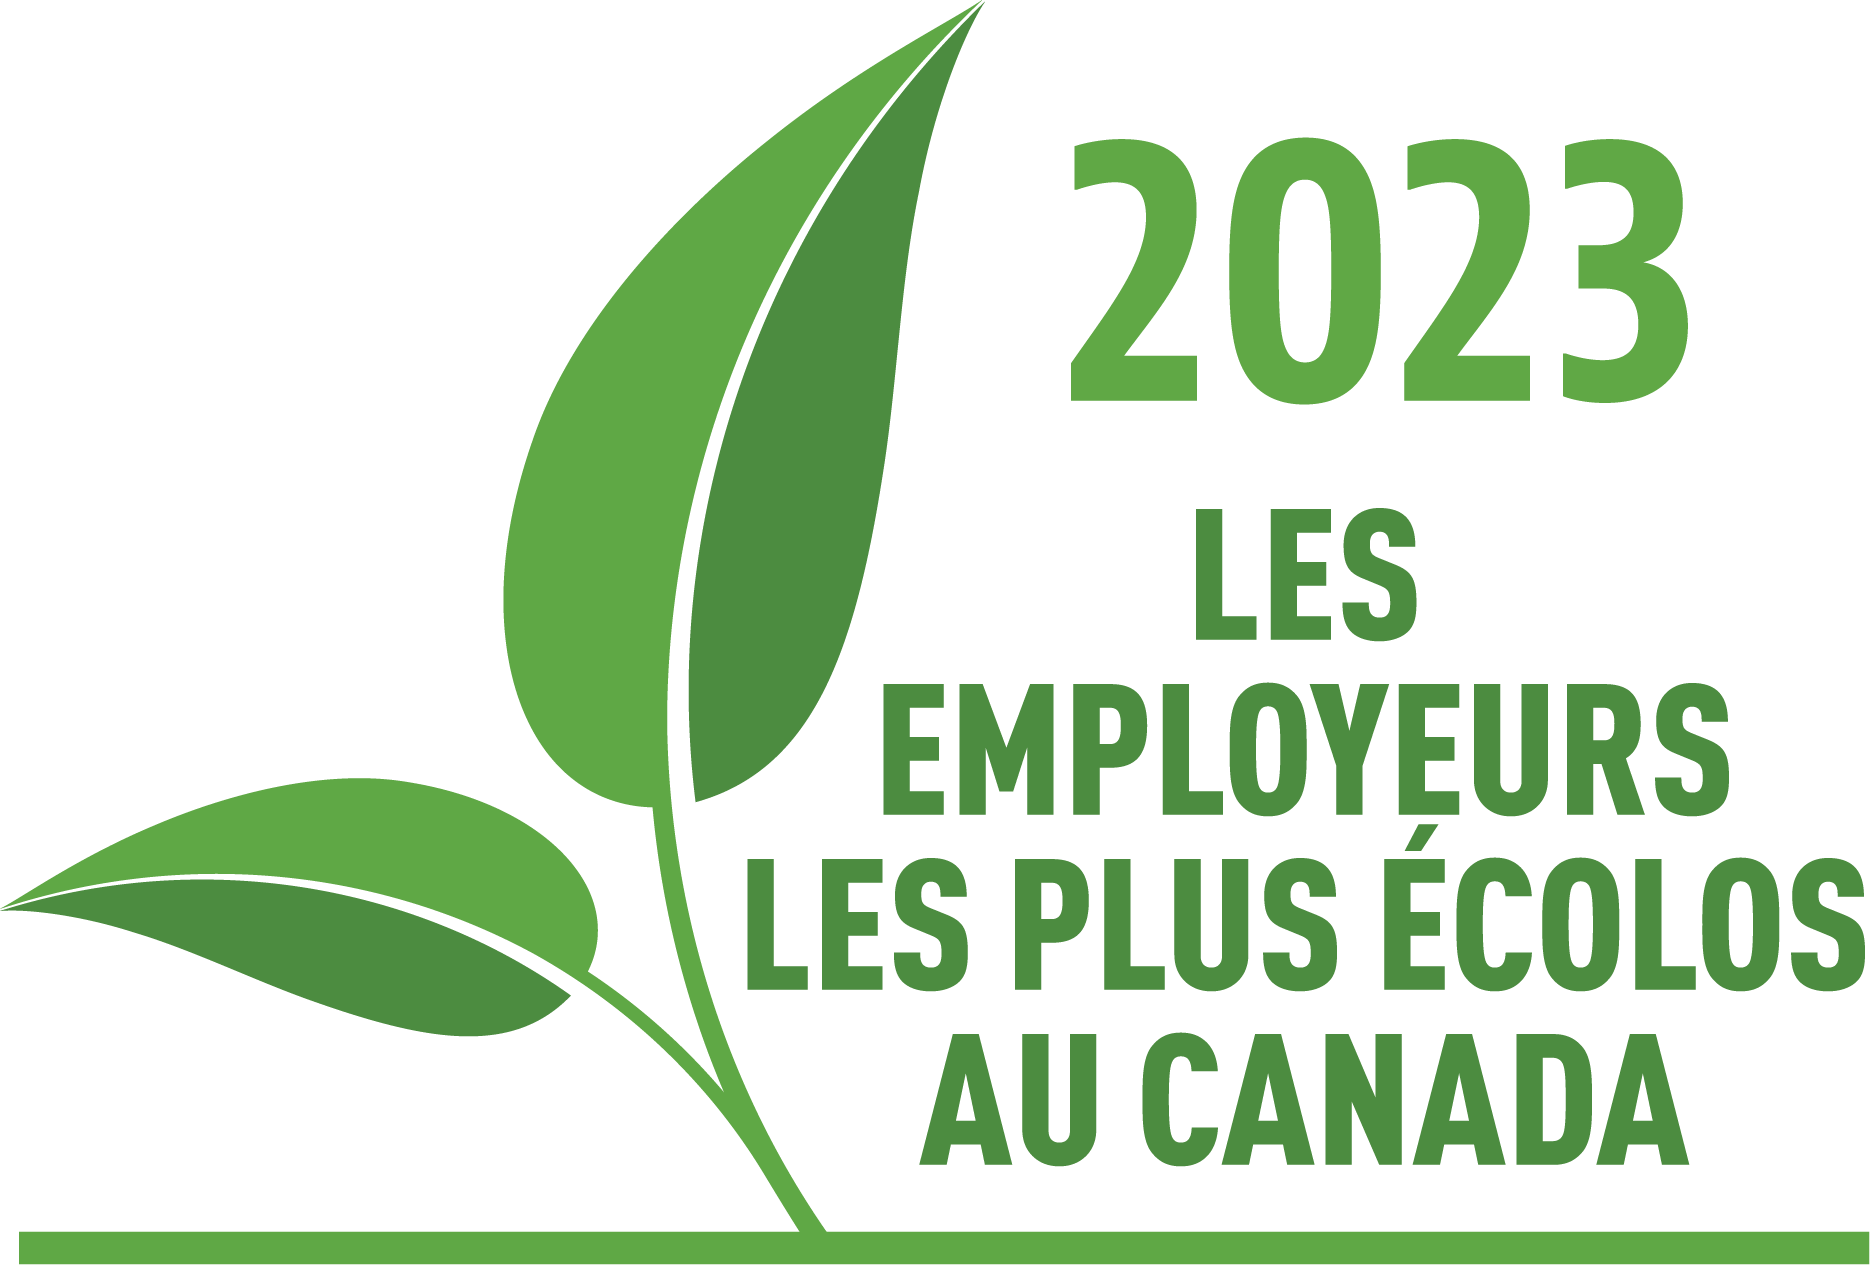 Les employeurs les plus verts du Canada